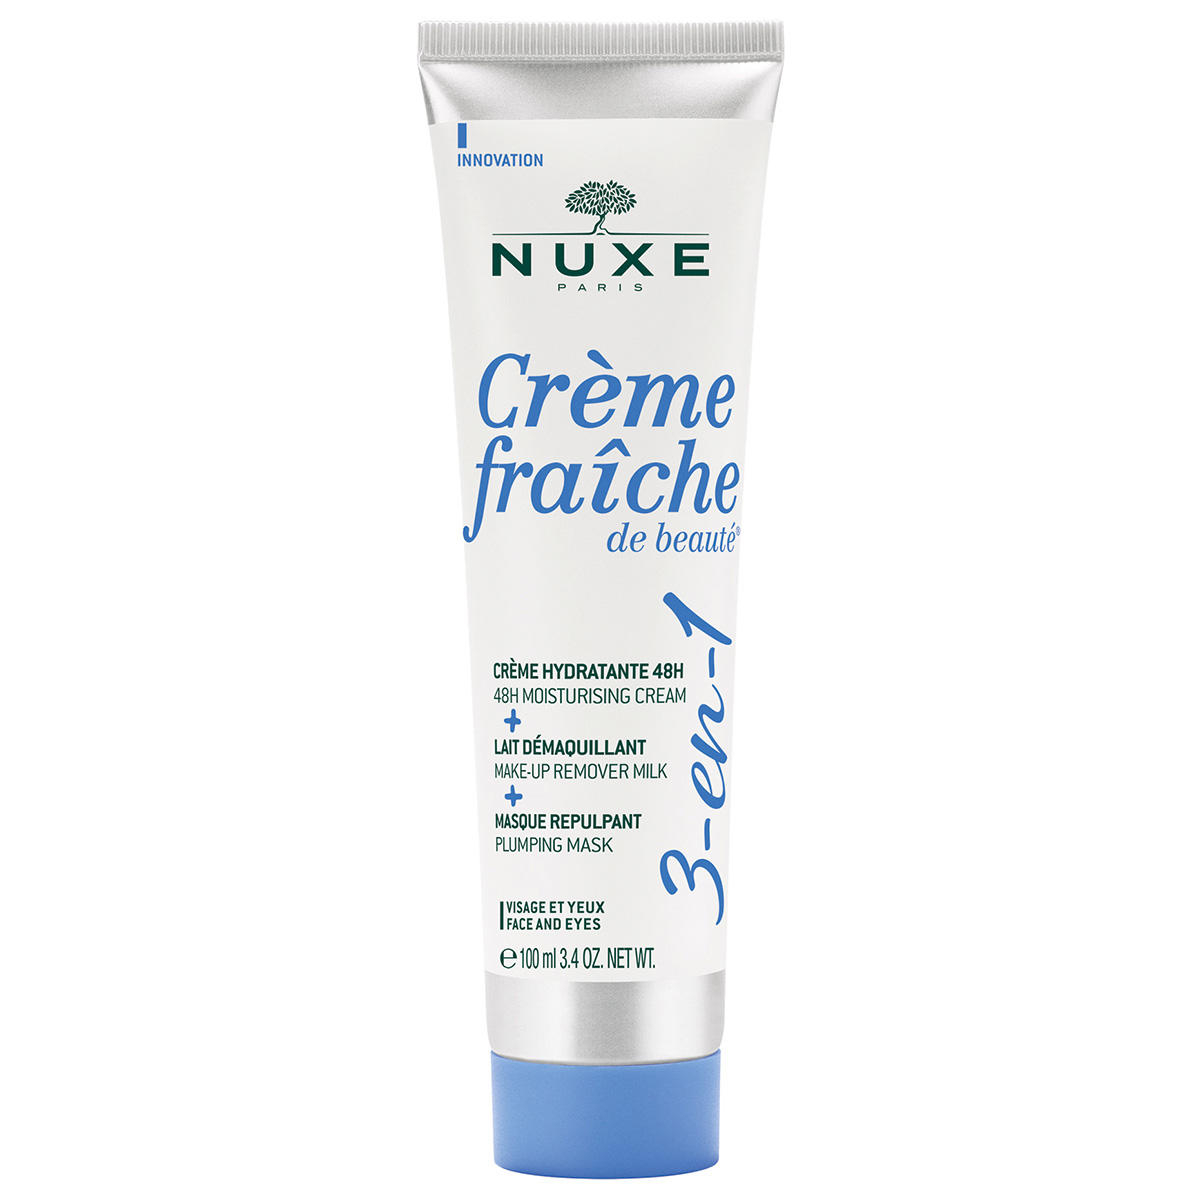 NUXE Crème Fraîche de Beauté 3-in-1 multifunctionele verzorging 100 ml - 1